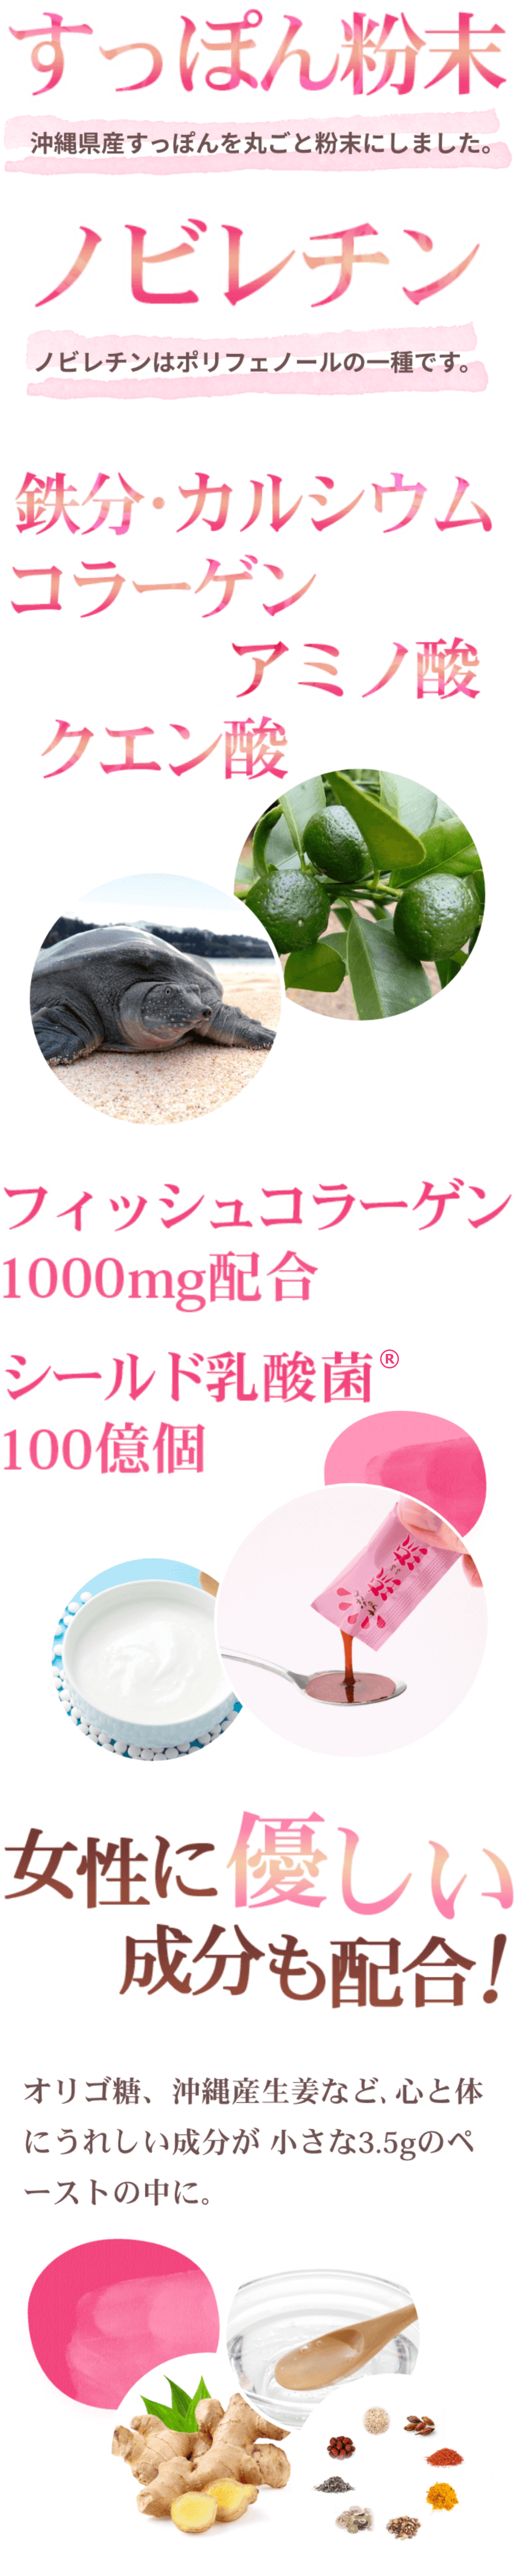 すっぽん粉末 沖縄県産すっぽんを丸ごと粉末にしました。ノビレチン ノビレチンはポリフェノールの一種です。鉄分・カルシウム コラーゲン アミノ酸 クエン酸 フィッシュコラーゲン1000mg配合 シールド乳酸菌100億個 女性にも優しい成分も配合! オリゴ糖、沖縄産生姜など、心と体にうれしい成分が小さな3.5gのペーストの中に。